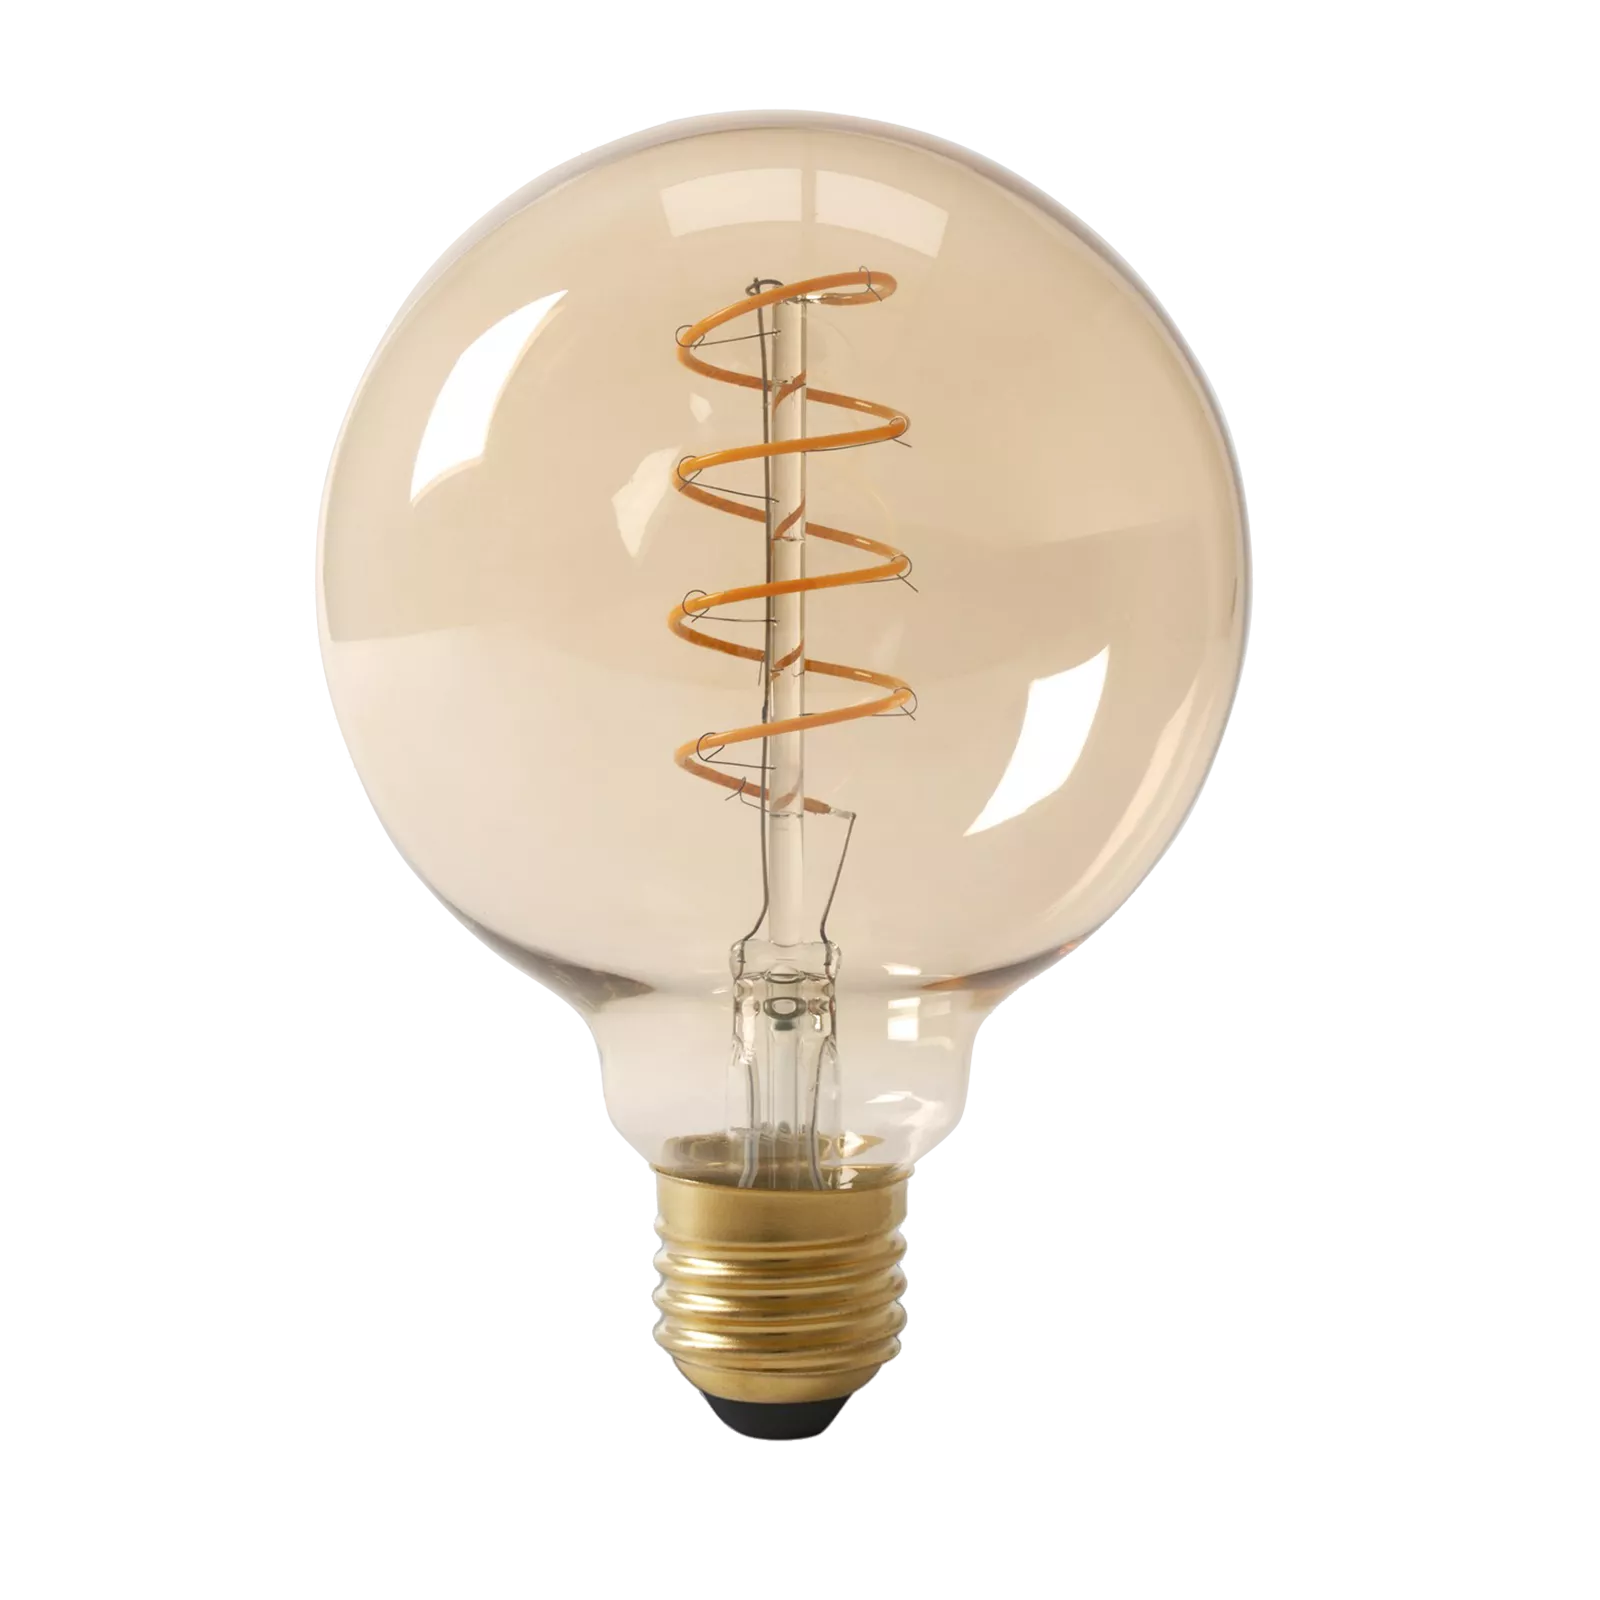 LED lamp (125x170mm) Flex Globe - Gold 